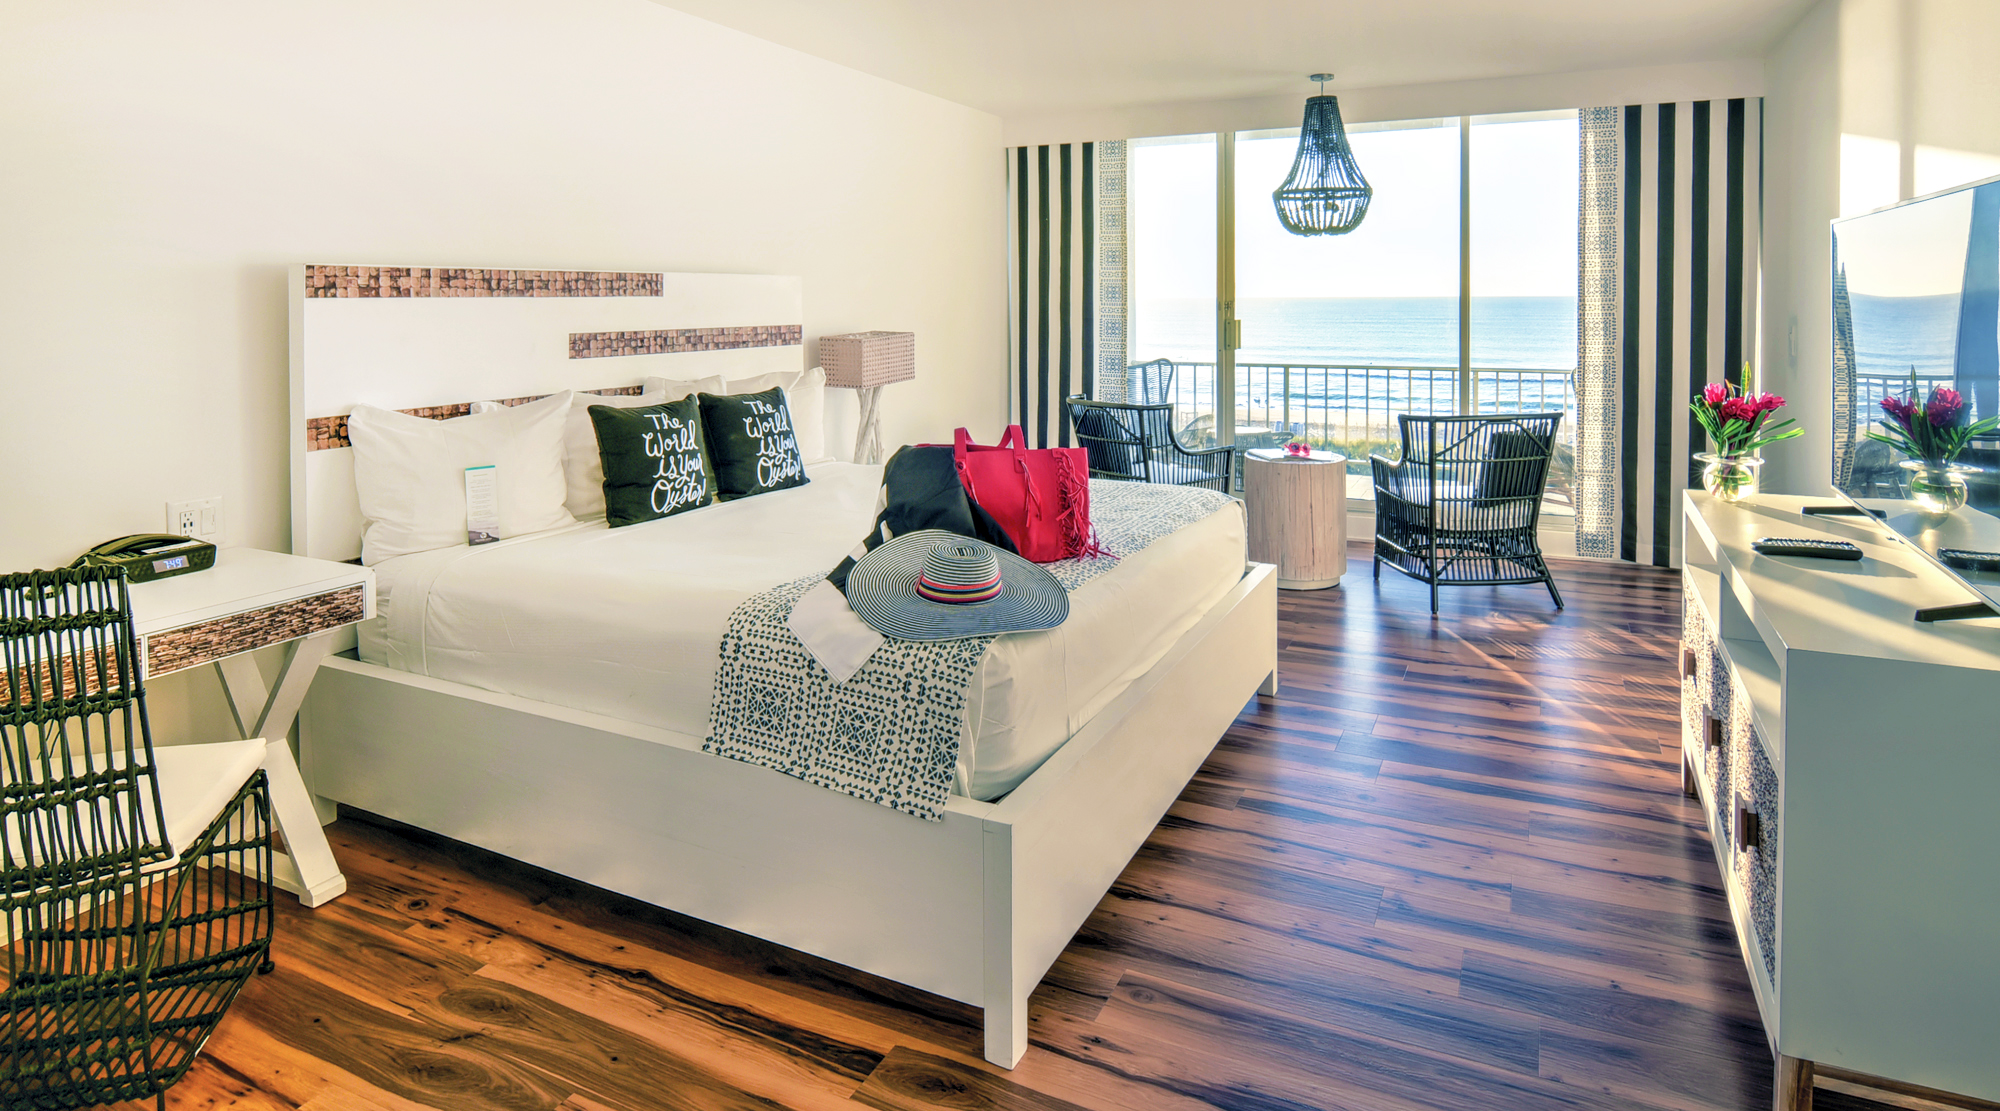 Oceanfront guest room with hardwood floor and outdoor balcony.